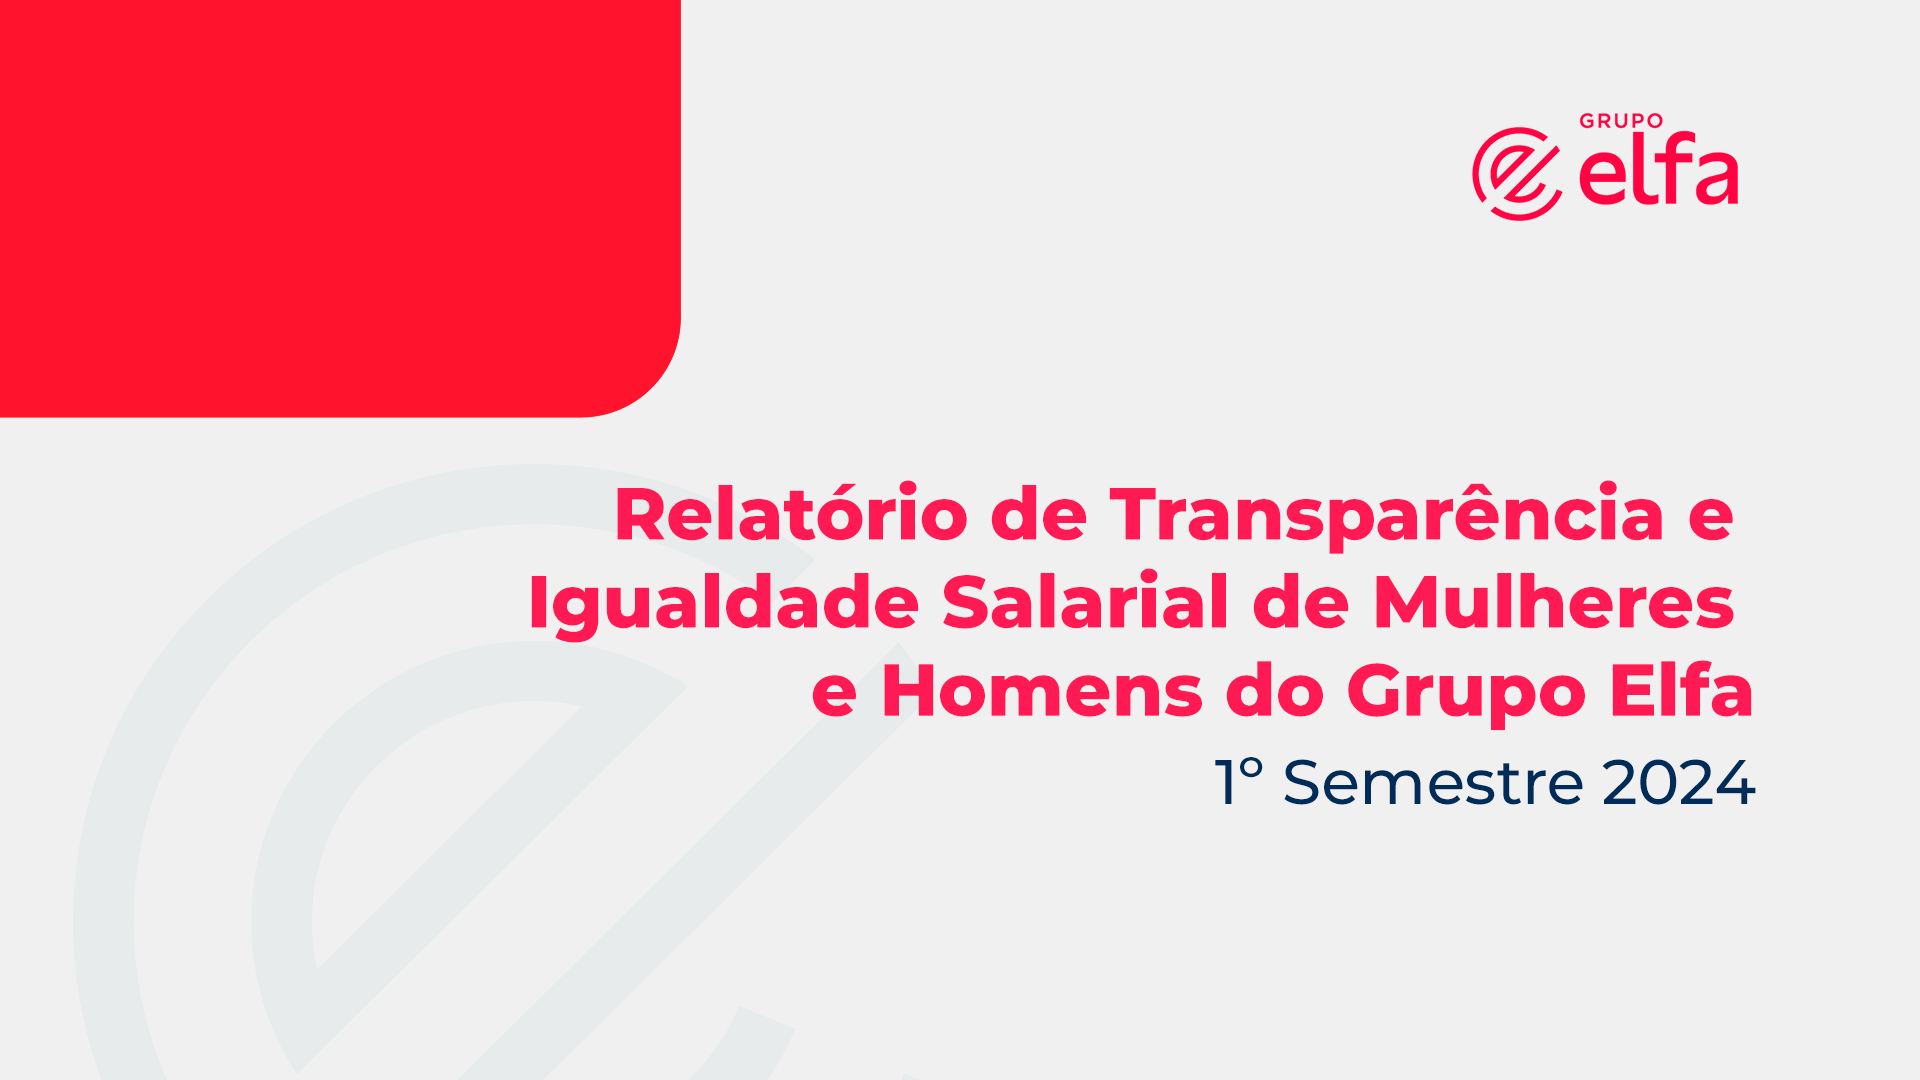 Relatório de Transparência e Igualdade Salarial de Mulheres e Homens | 1º Semestre 2024